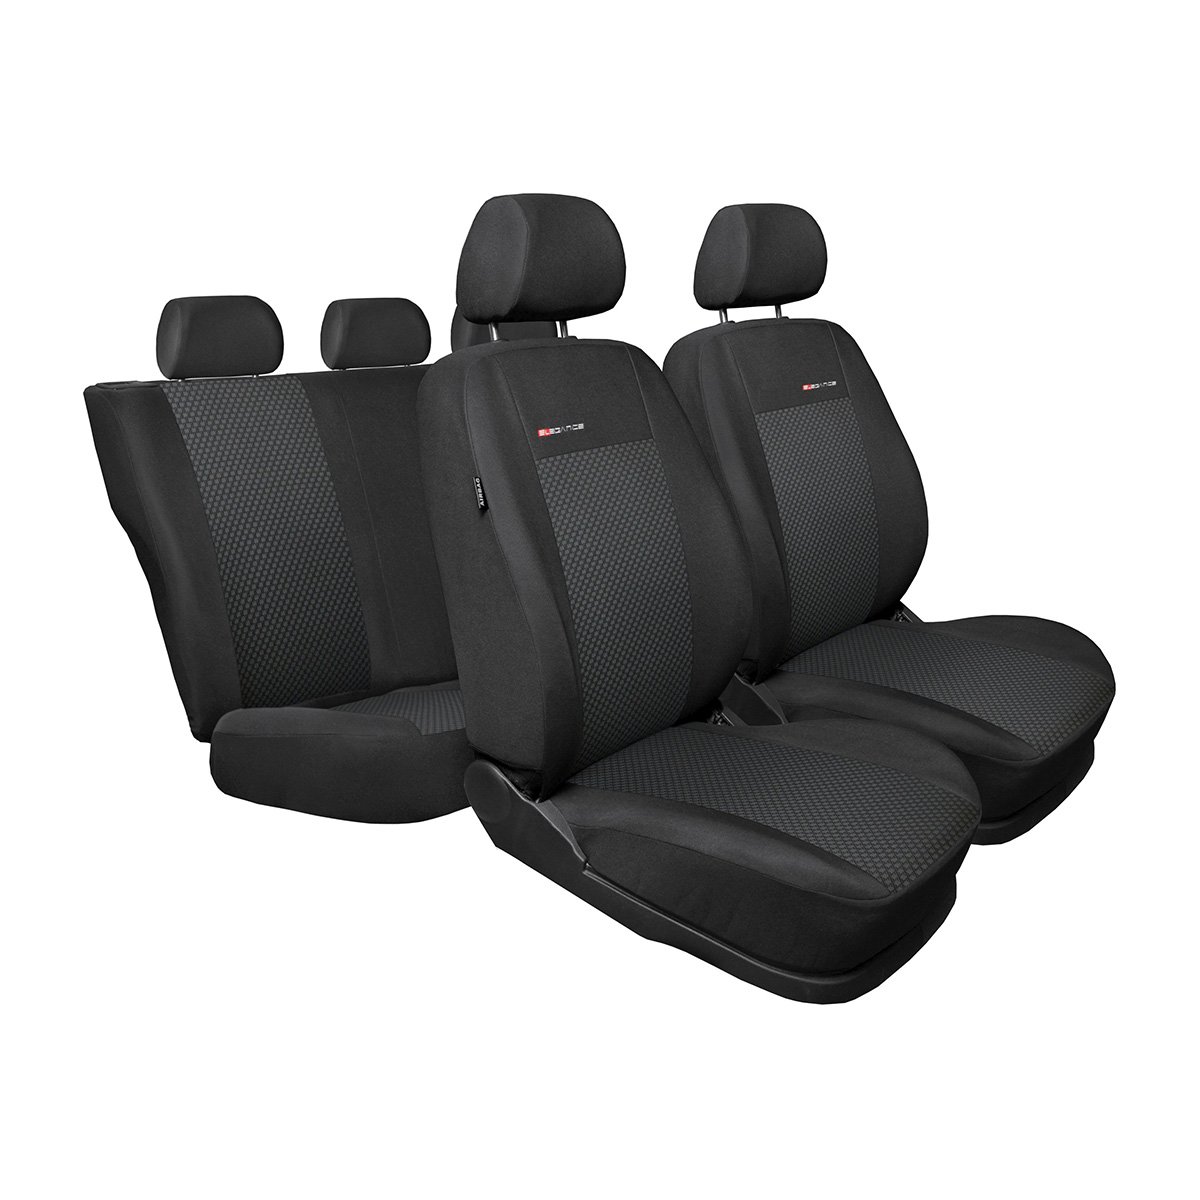 Mossa - Maßgeschneiderte Sitzbezüge Auto kompatibel mit Skoda Karoq SUV (2017- ) - Autositzbezüge Schonbezüge für Autositze - E3 von Mossa